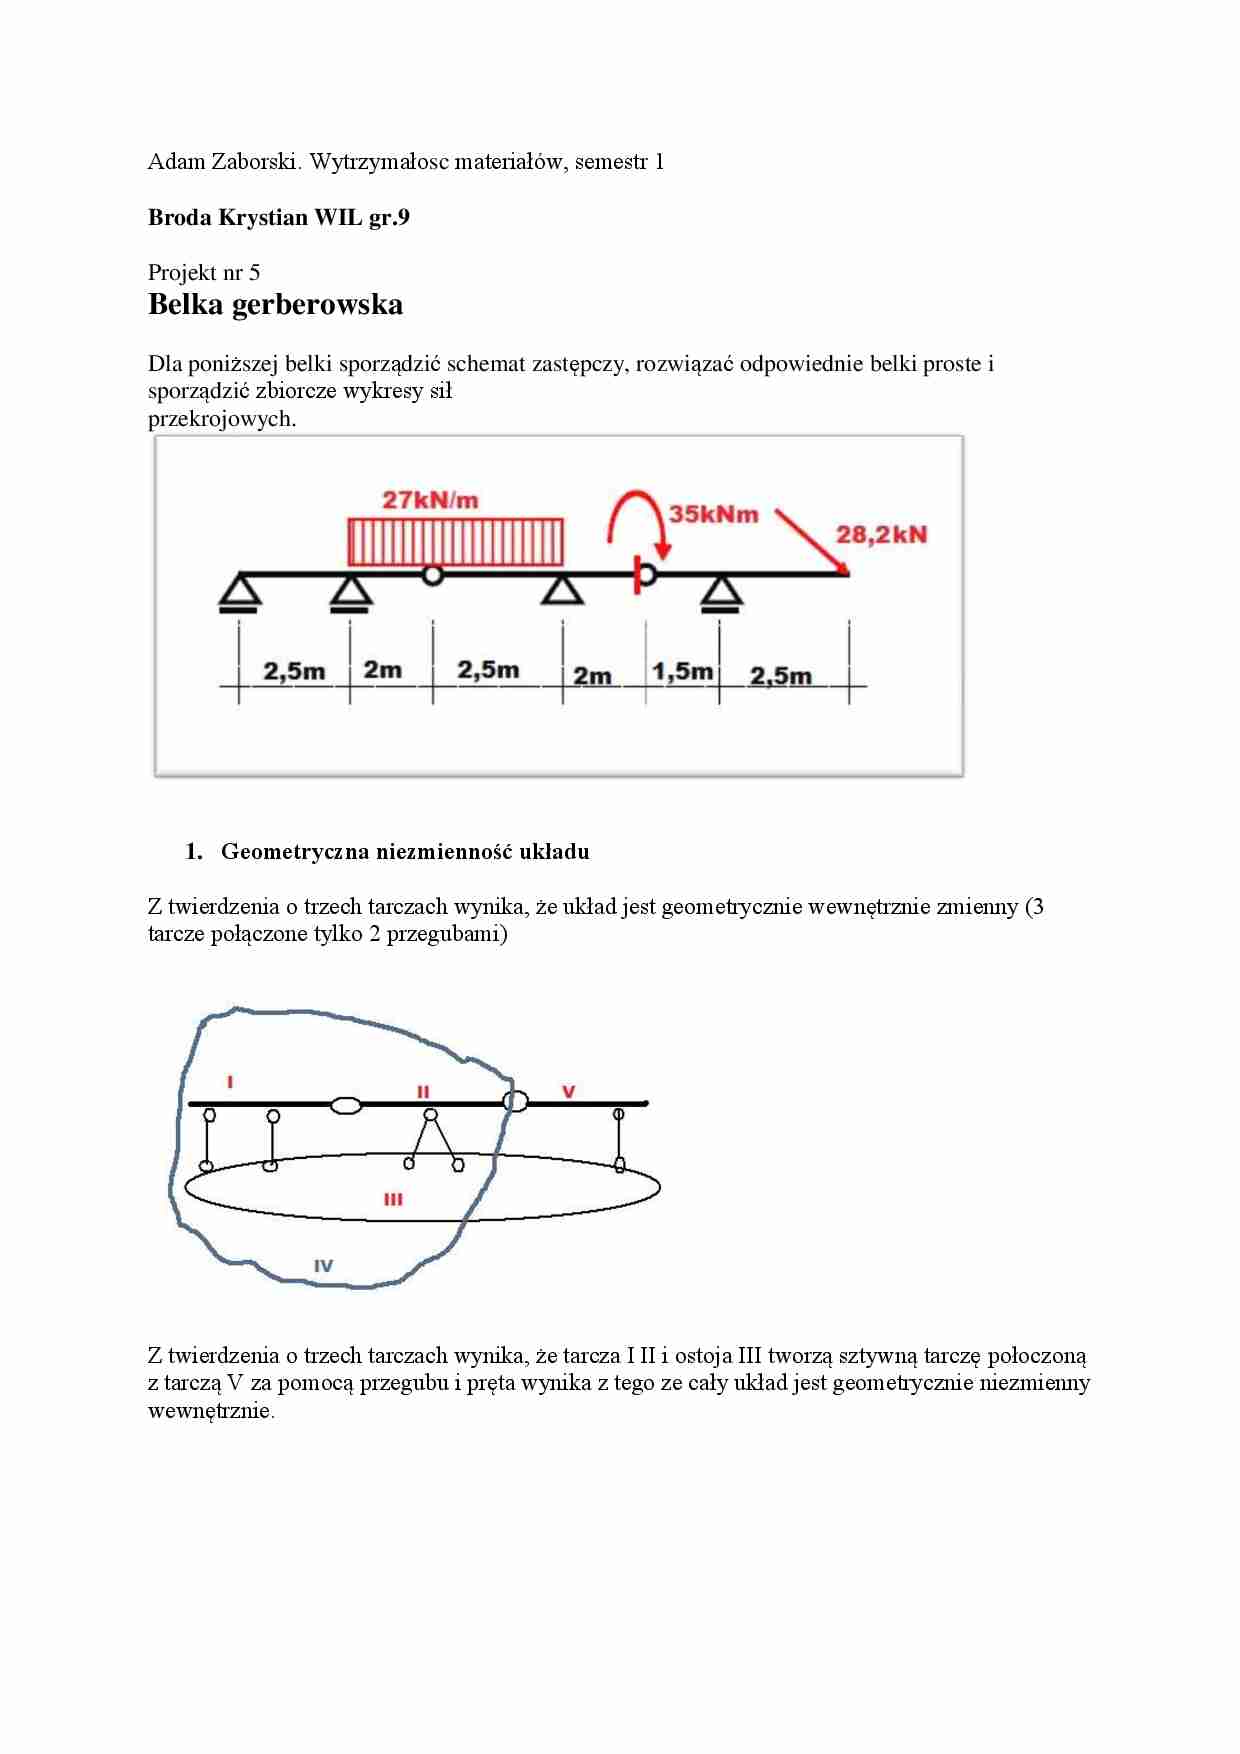 Belka gerberowska - Geometryczna niezmienność układu - strona 1